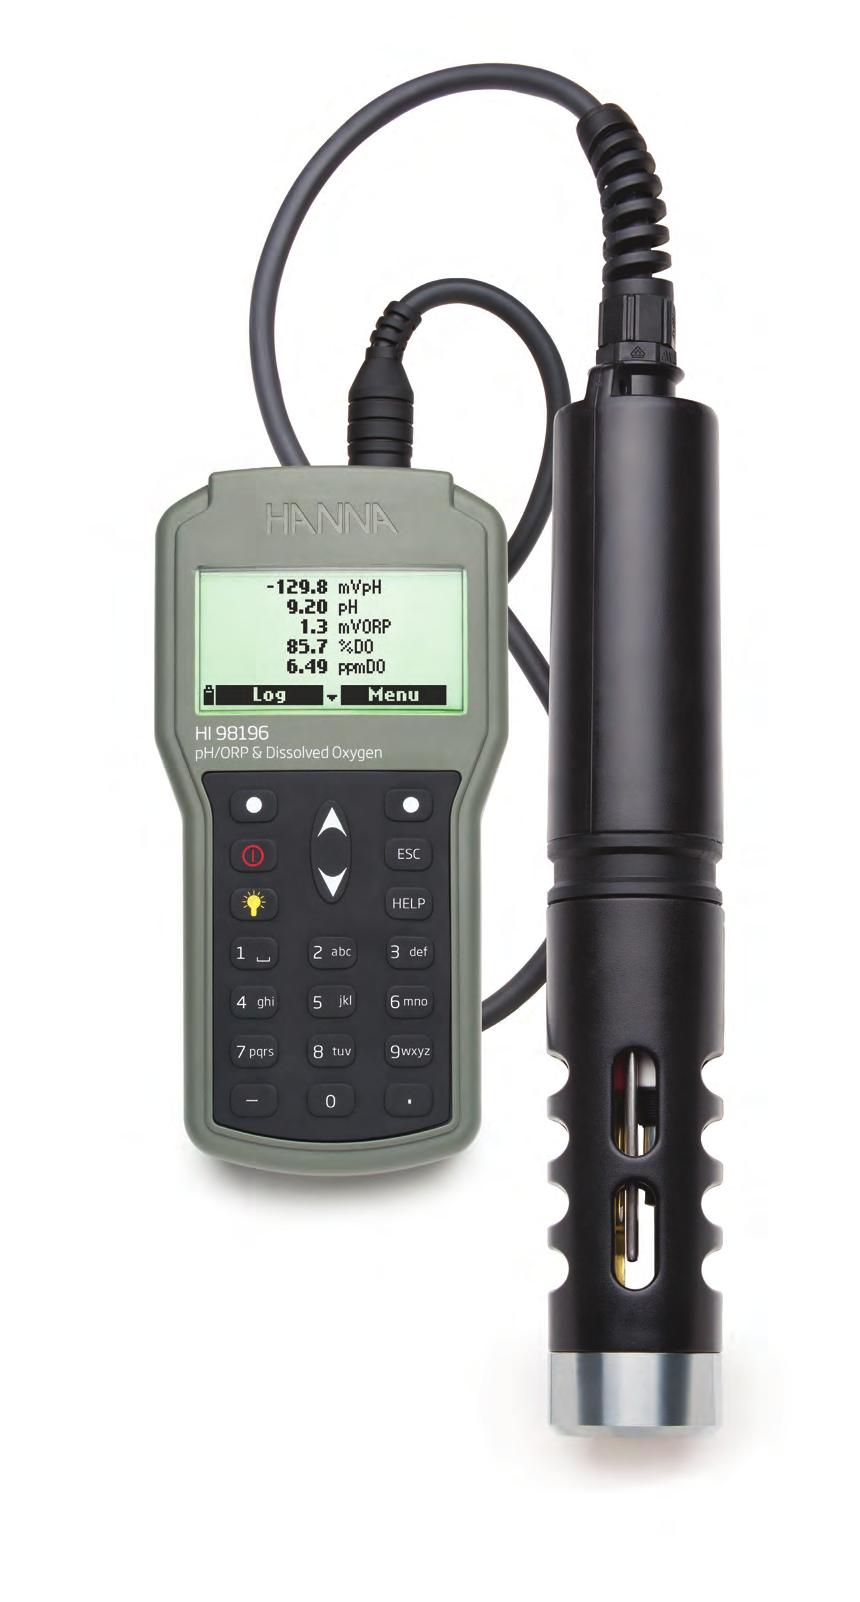 HI98196 Waterproof Meter ph / mv, ORP, Dissolved Oxygen, Atmospheric Pressure and Waterproof IP67 rated waterproof, rugged enclosure for meter, IP68 for probe Digital probe Digital probe with two